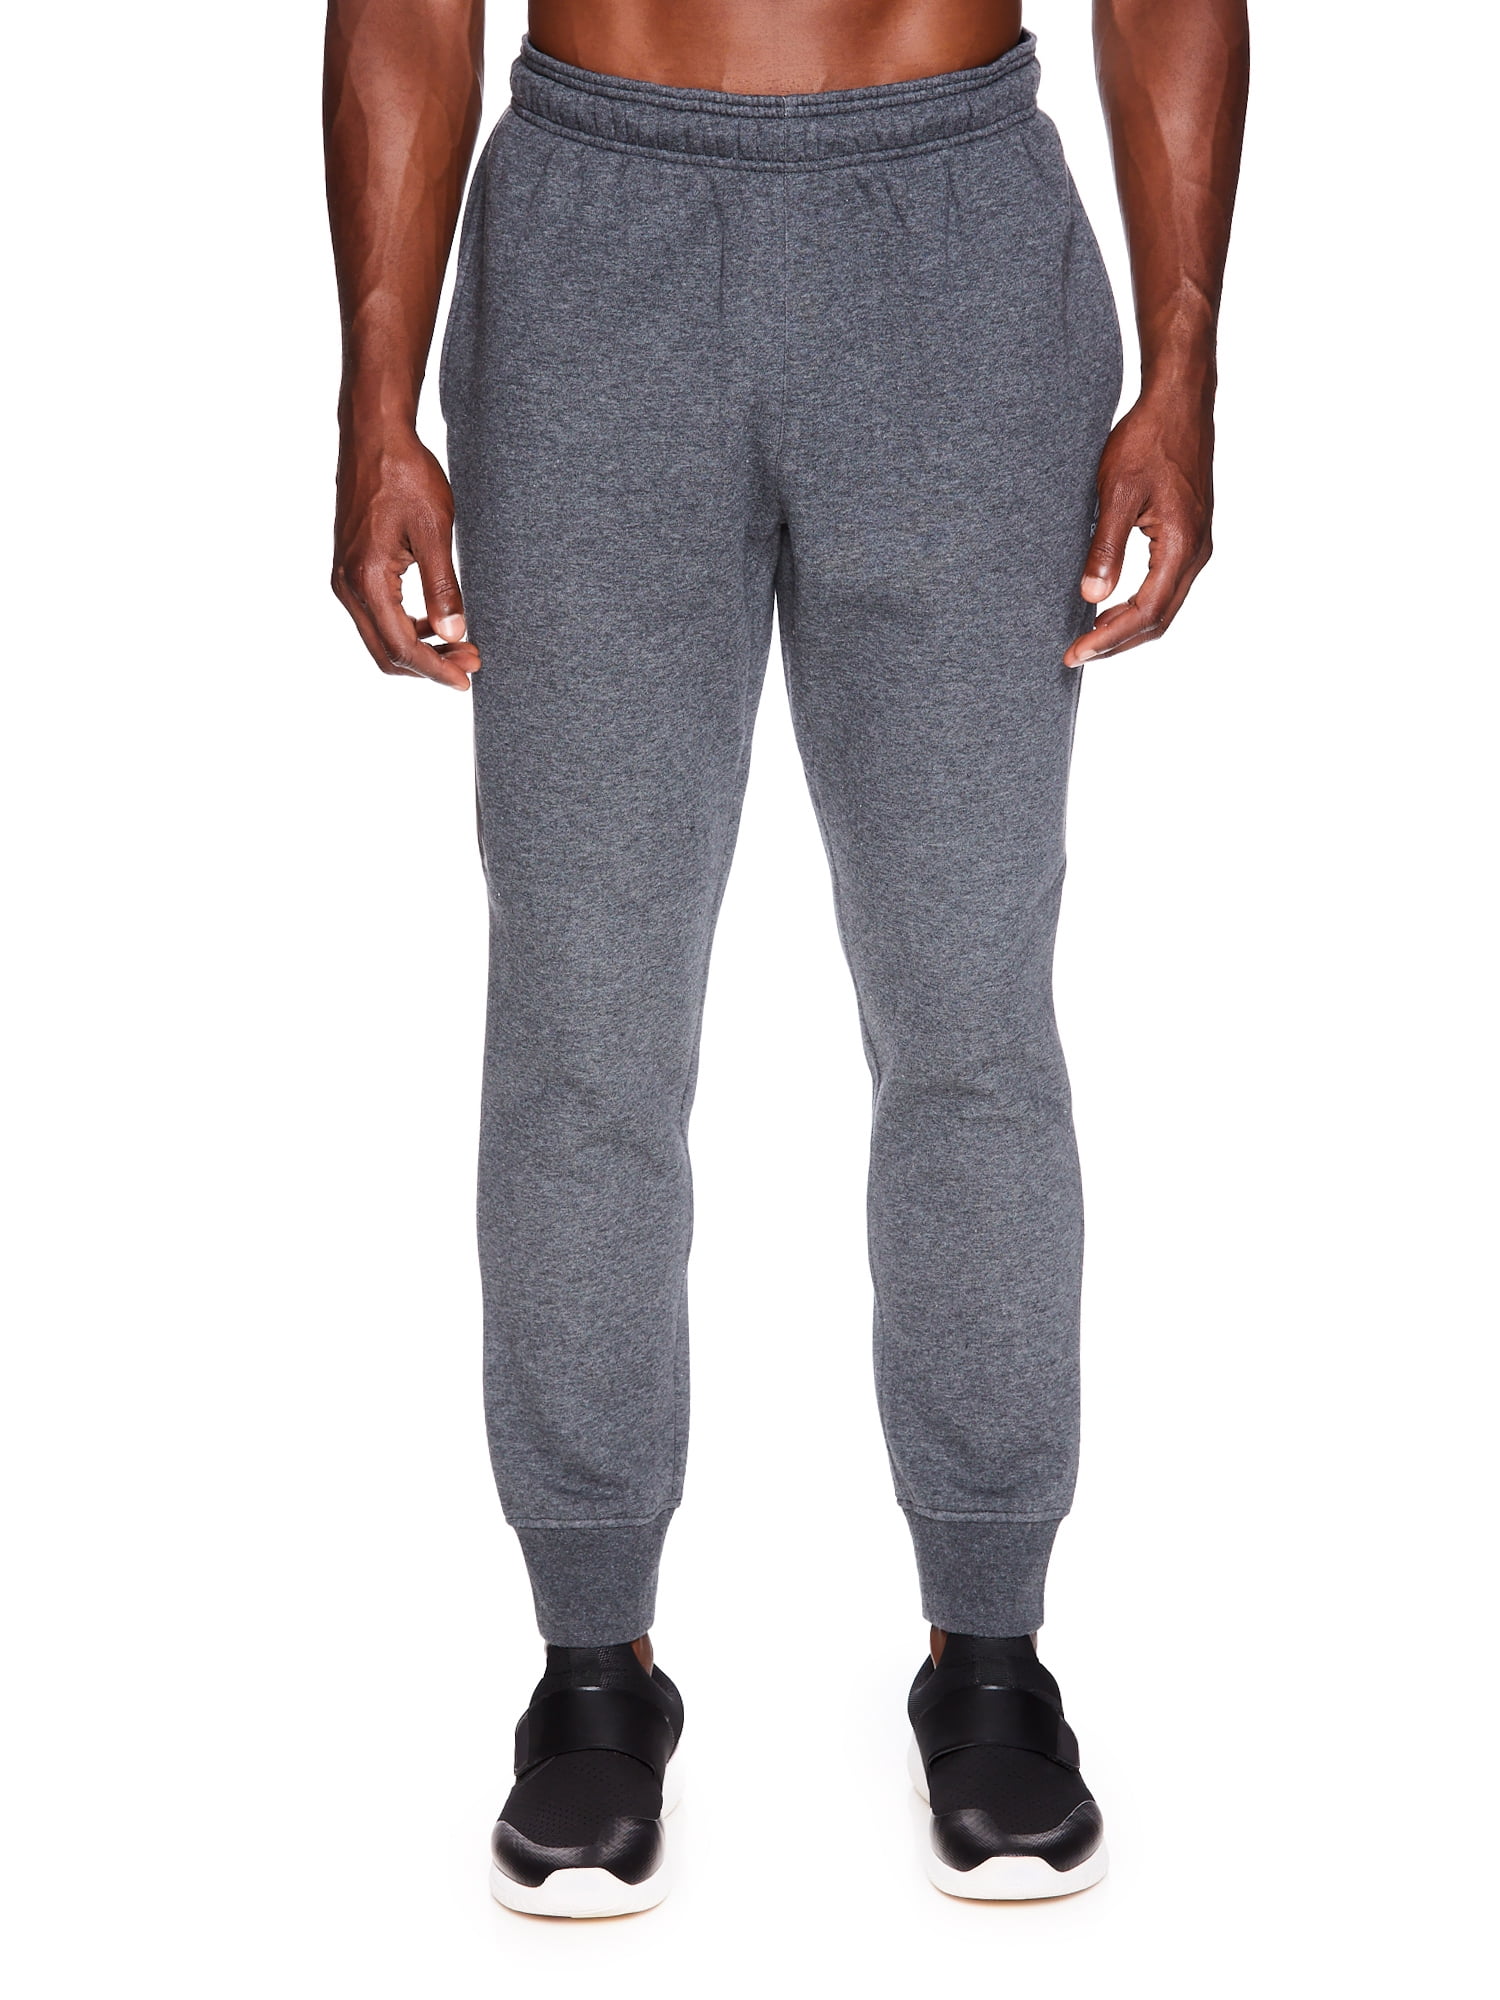 Buy ALTLIFE Solid Blended Regular Men's Active Wear Joggers | Shoppers Stop